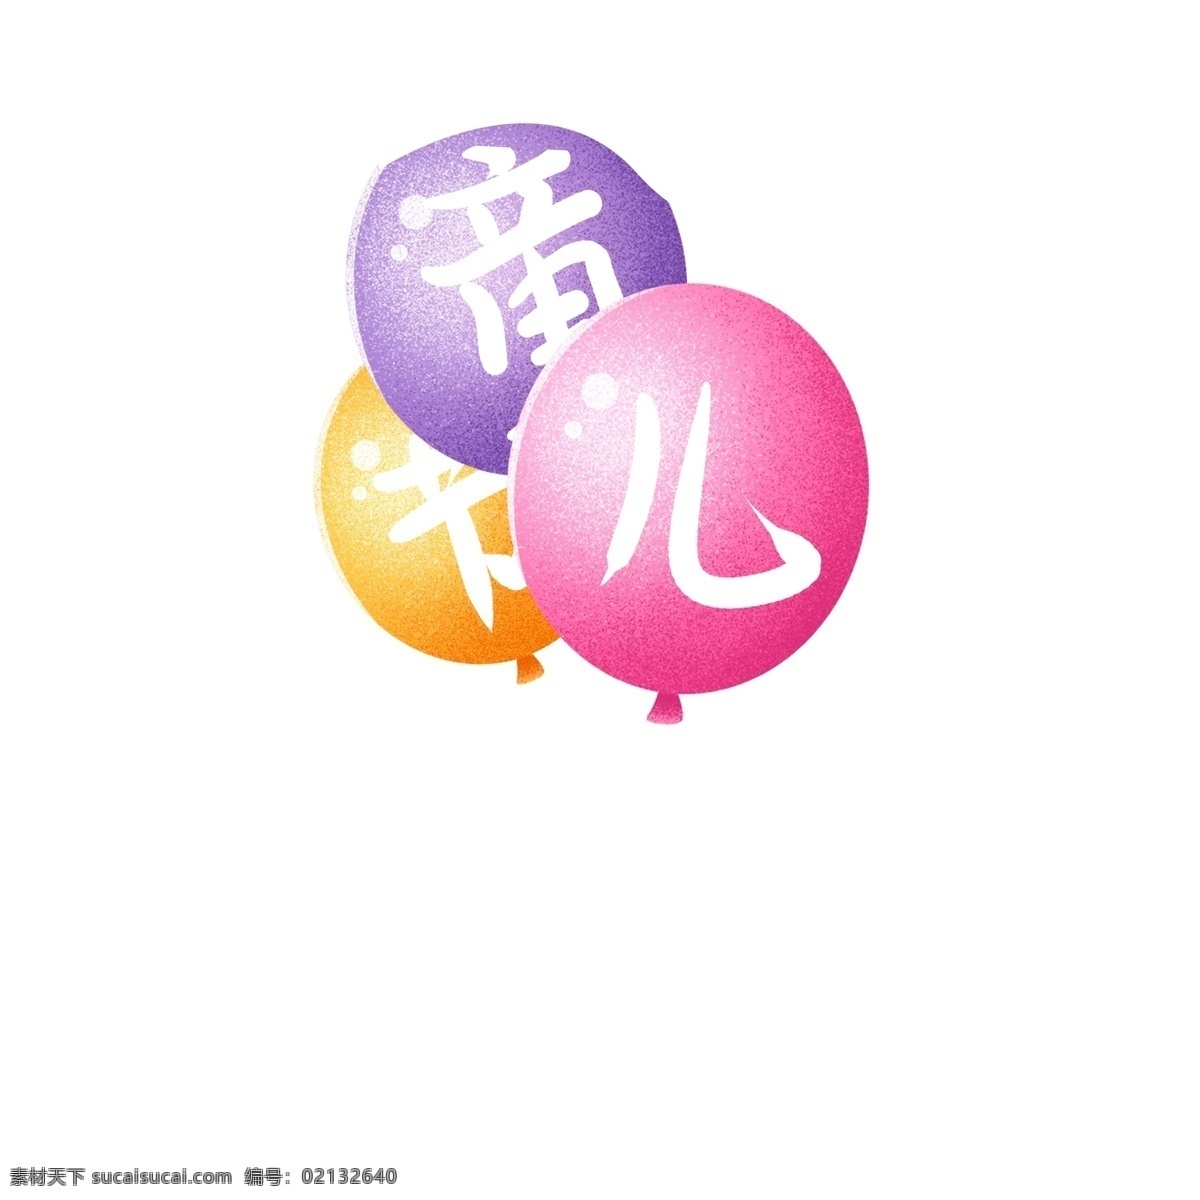 彩色 喜庆 气球 卡通 透明 装饰图案 节日元素 手绘素材 可爱 喜庆气球